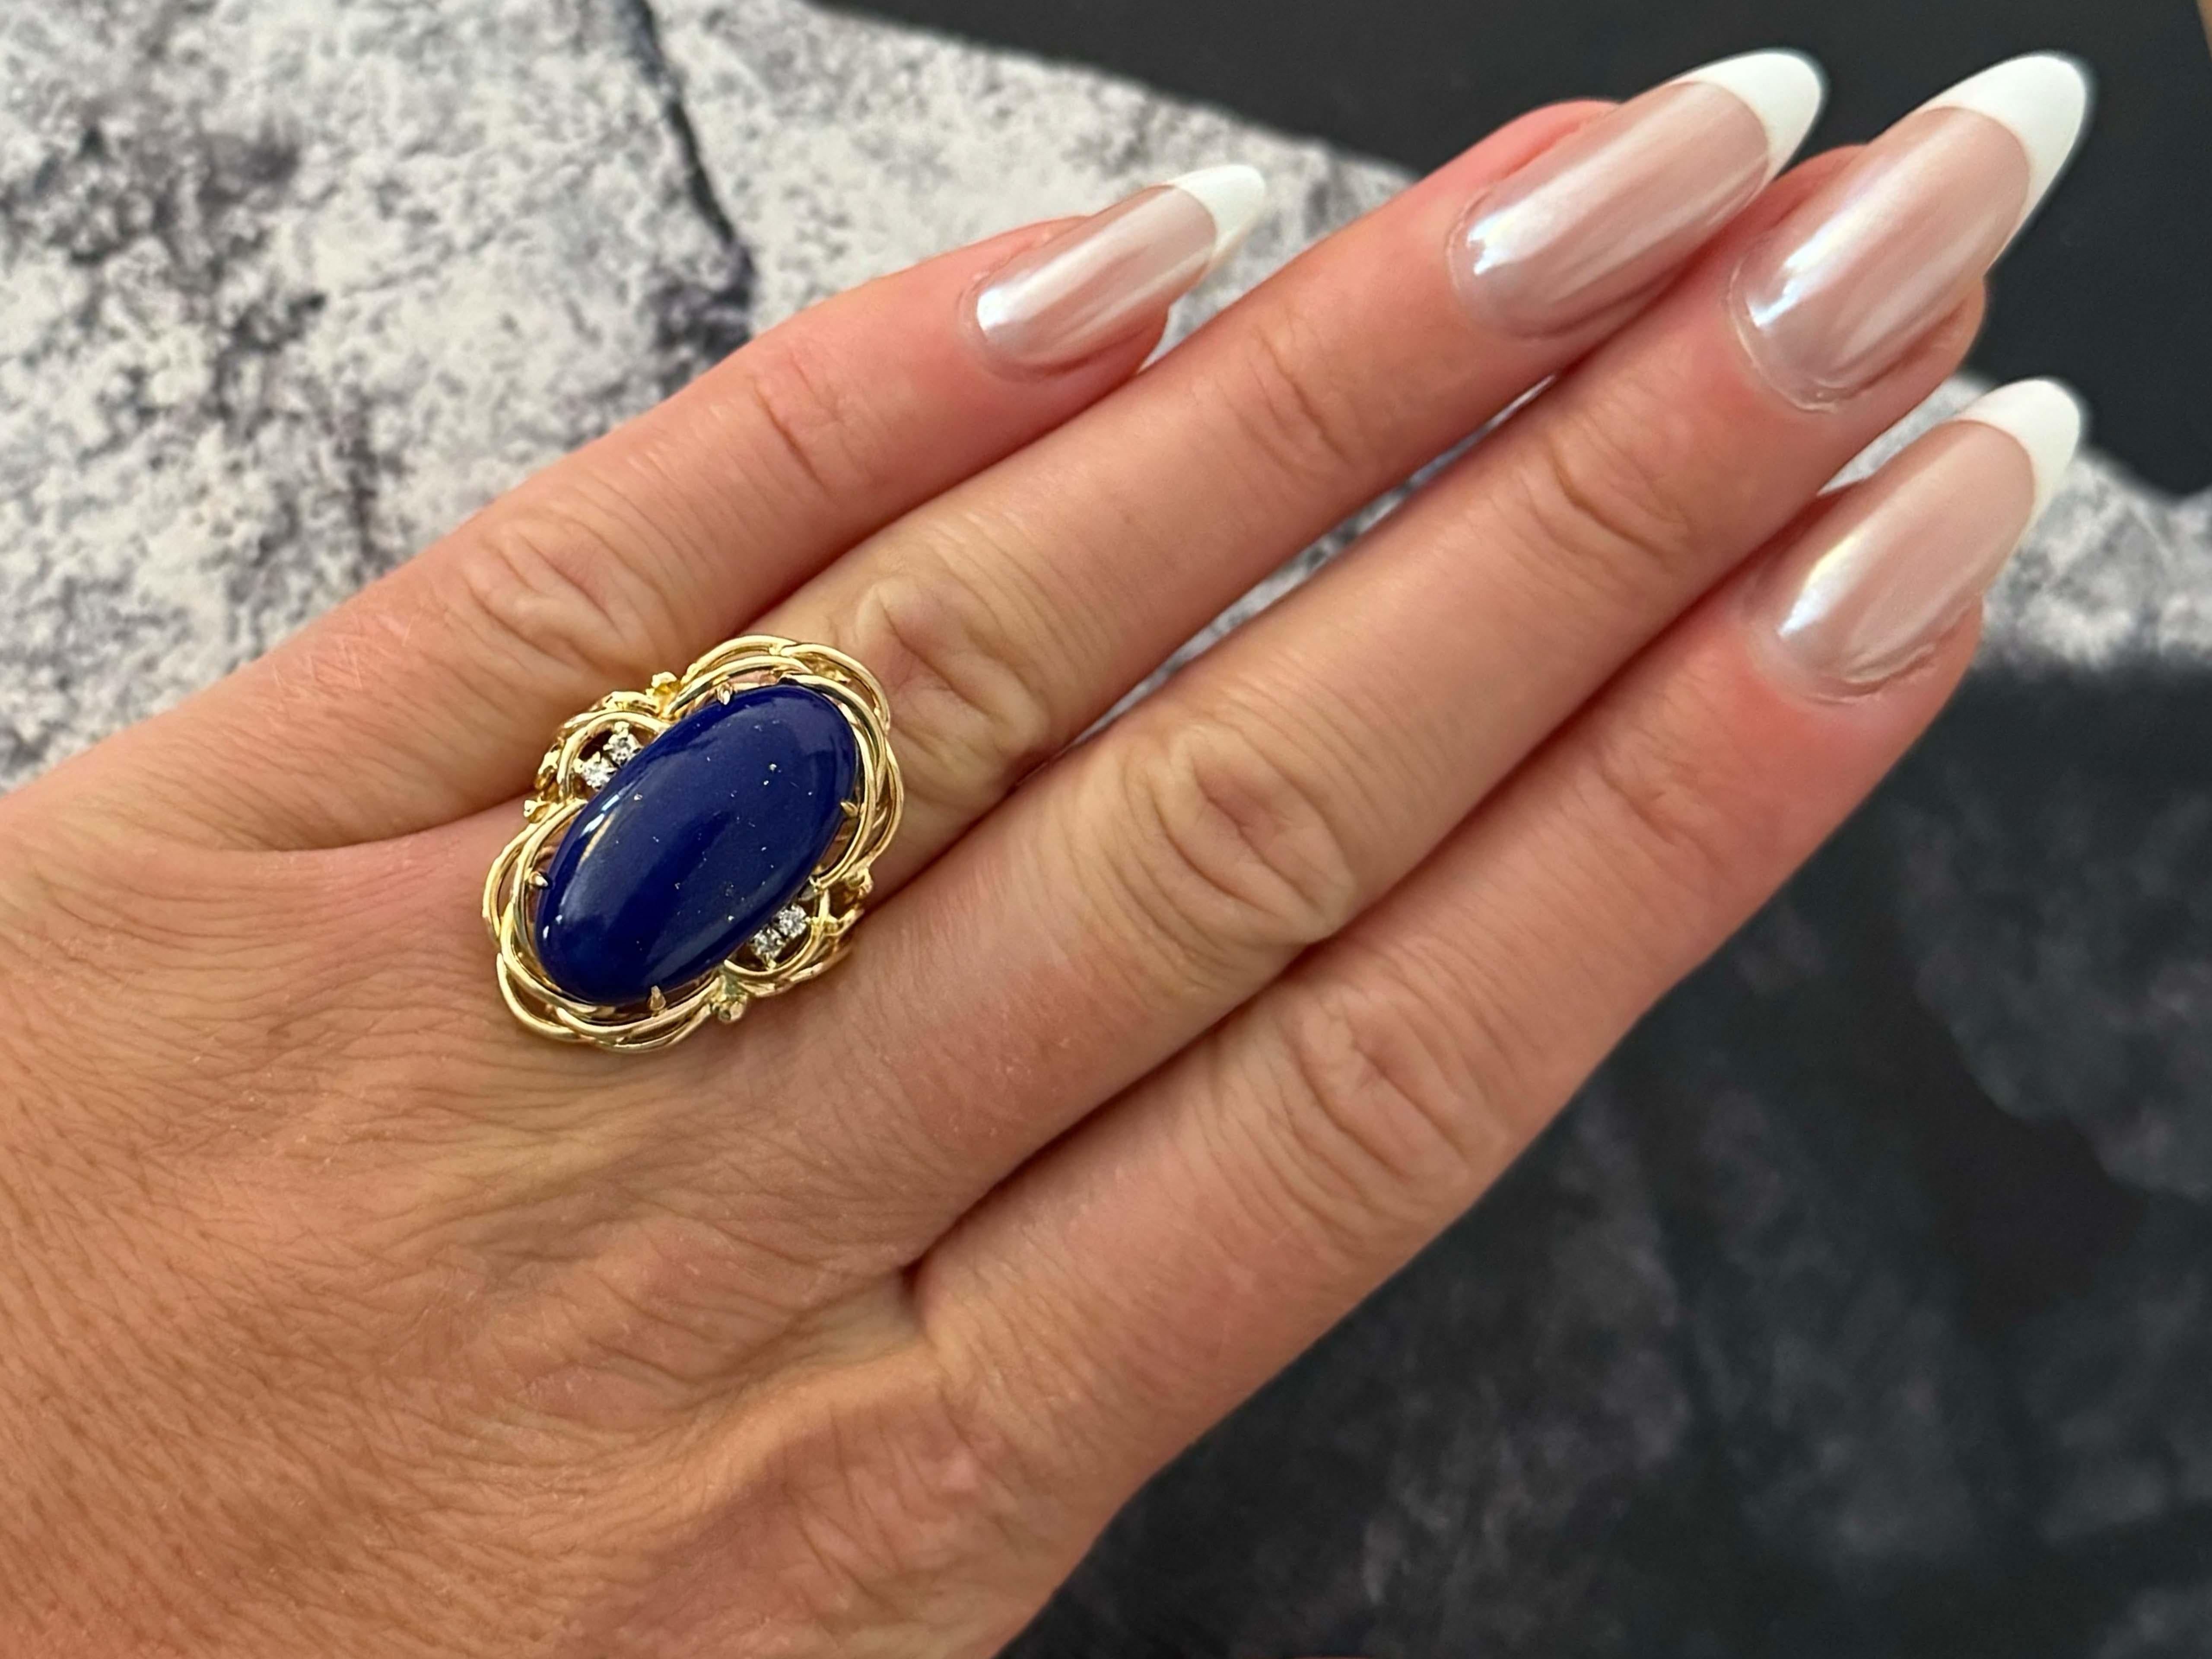 Spécifications de l'anneau :

Métal : Or jaune 14k

Poids total : 8,8 grammes

Pierre précieuse : Lapis Lazuli

Dimensions du lapis-lazuli : ~22 mm x  12 mm x 4.4 mm

Nombre de diamants : 4

Couleur du diamant : G-I

Poids en carats du diamant :